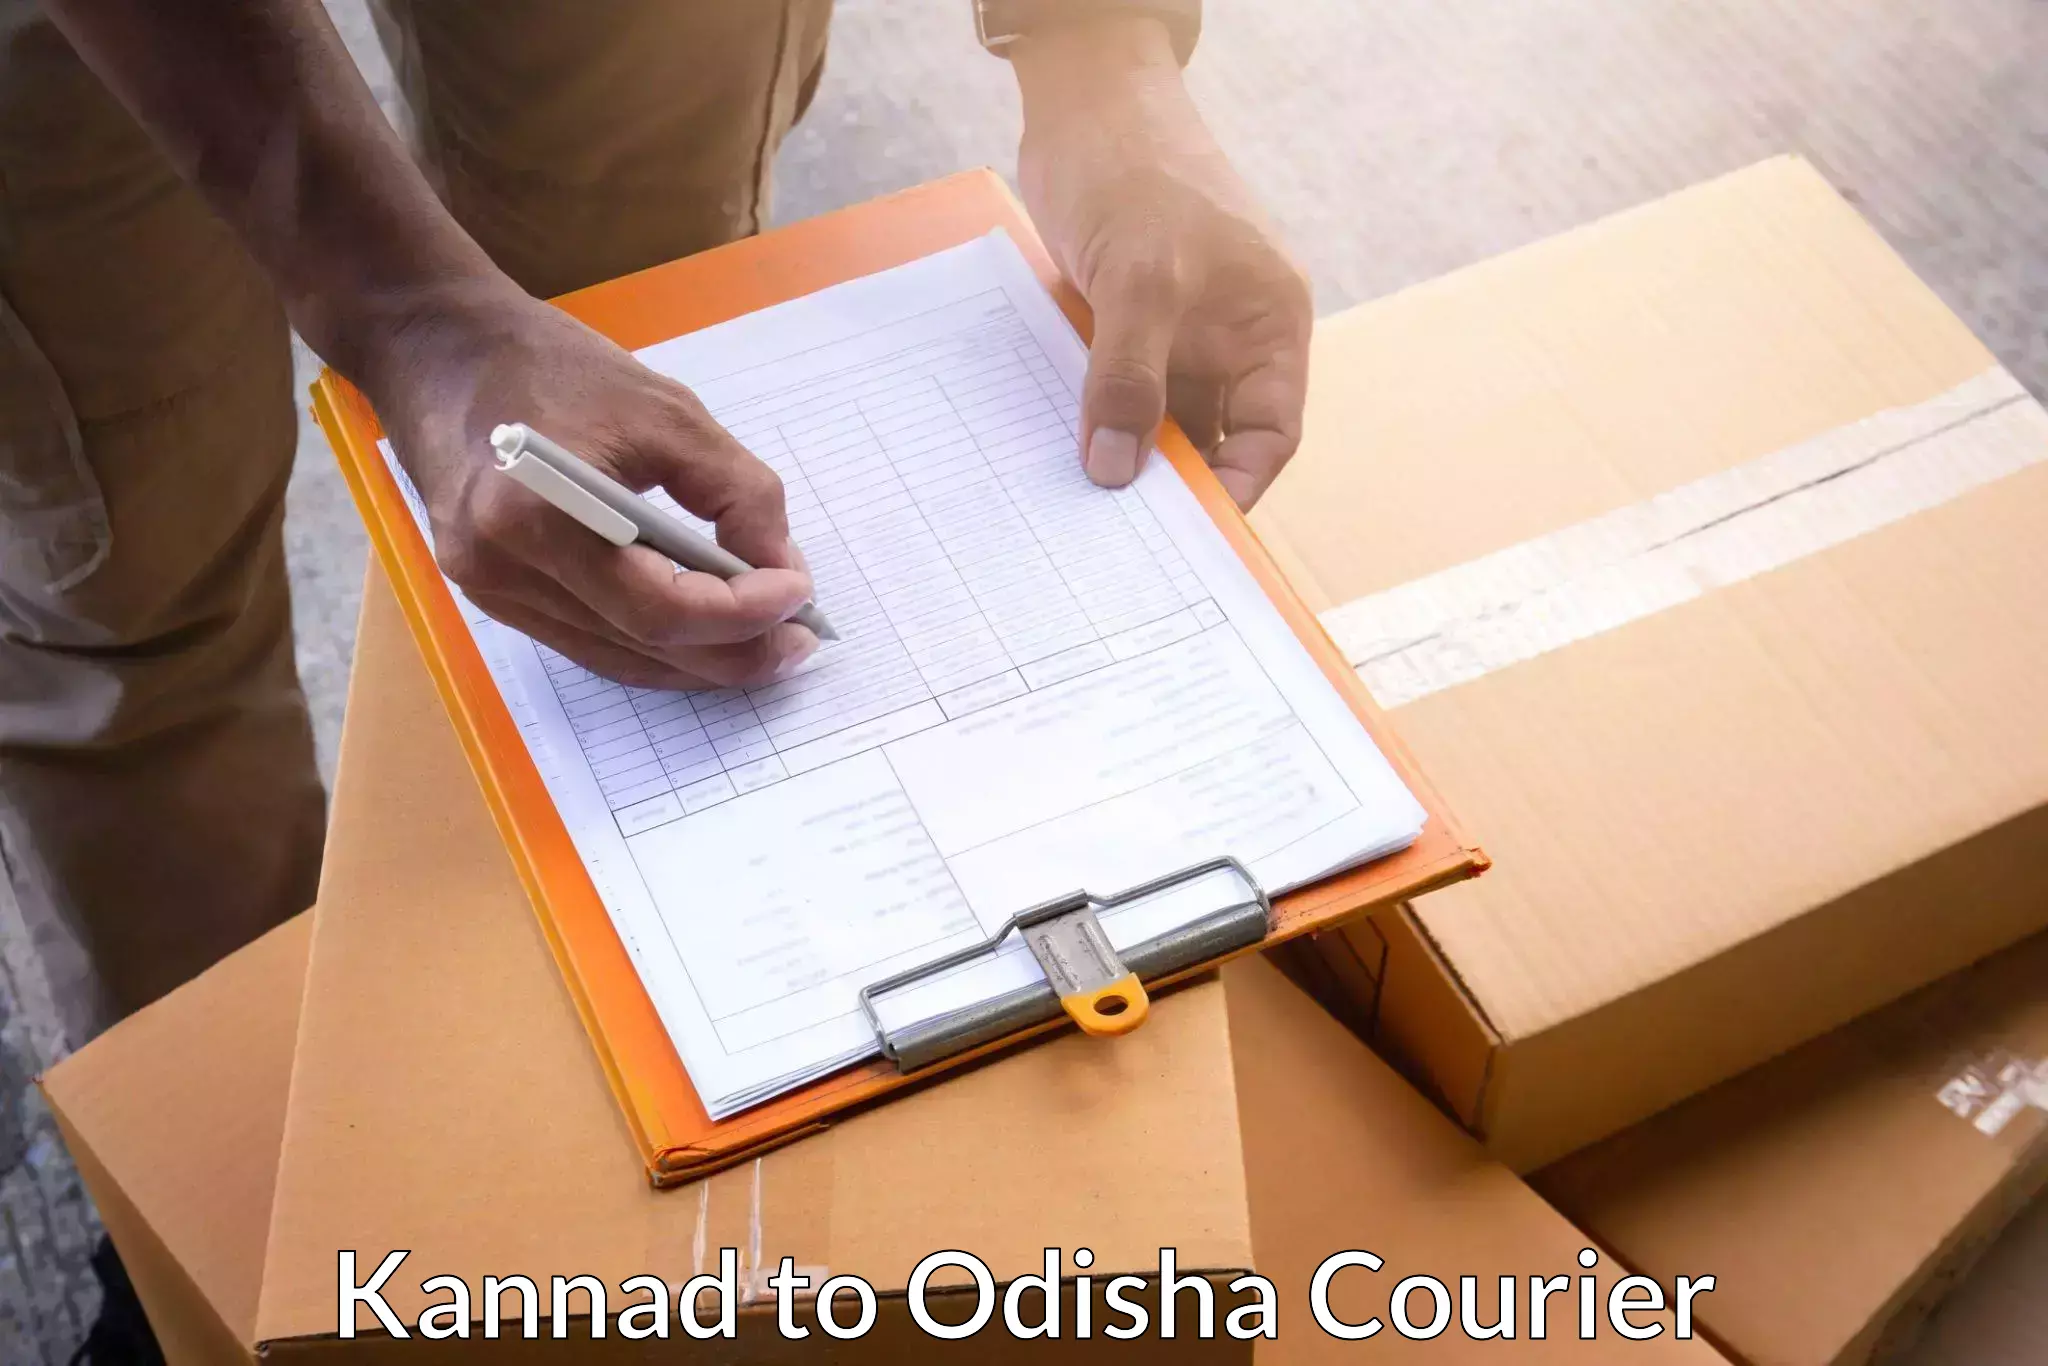 Comprehensive parcel tracking Kannad to Ukhunda